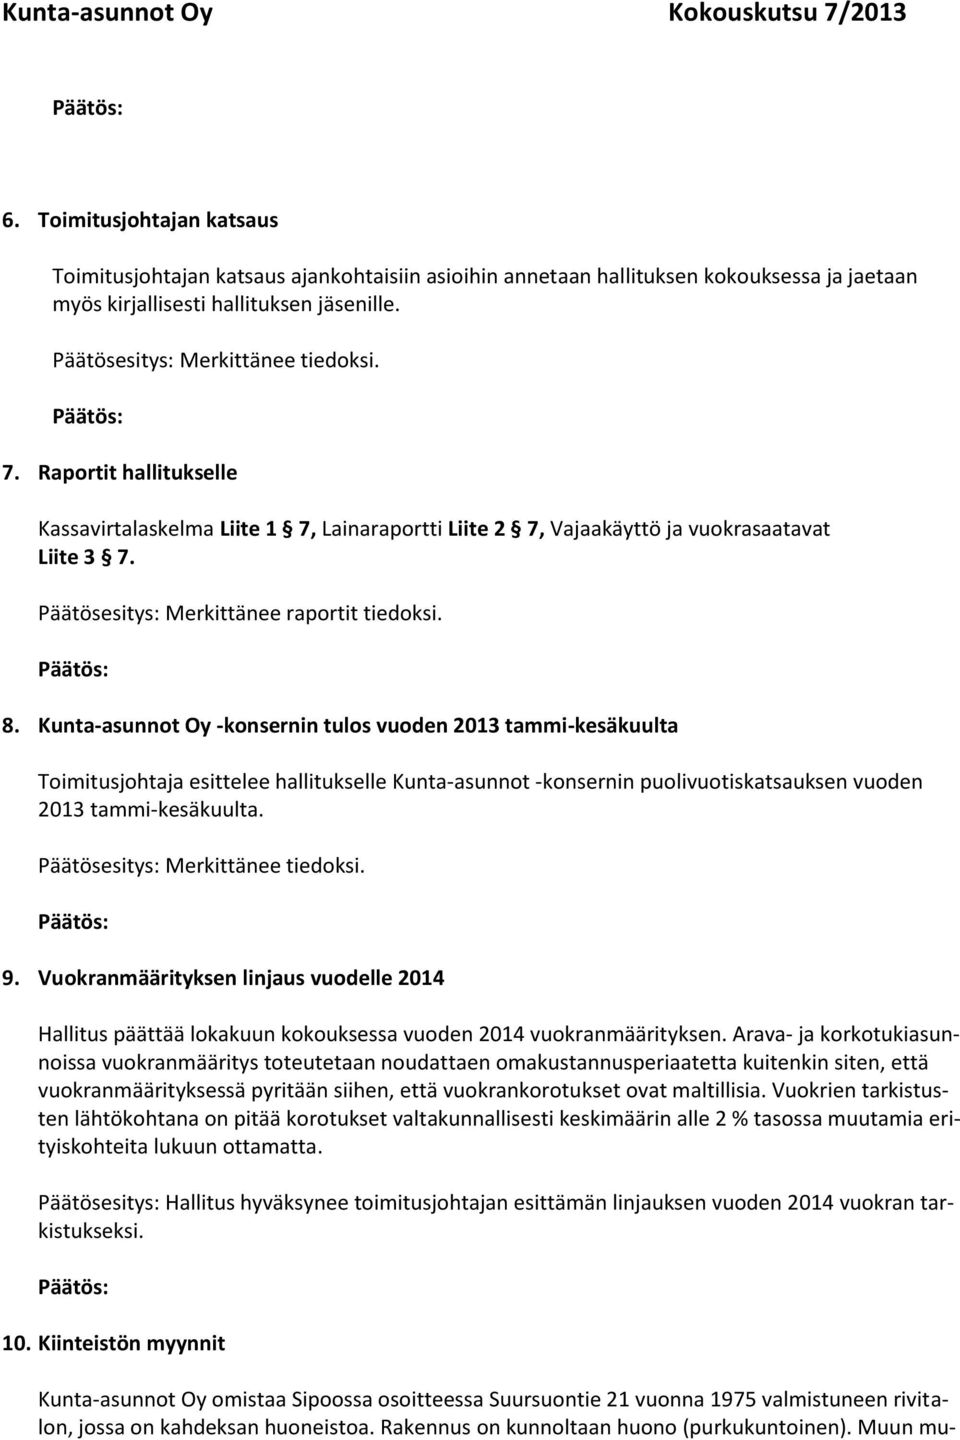 Kunta-asunnot Oy -konsernin tulos vuoden 2013 tammi-kesäkuulta Toimitusjohtaja esittelee hallitukselle Kunta-asunnot -konsernin puolivuotiskatsauksen vuoden 2013 tammi-kesäkuulta.